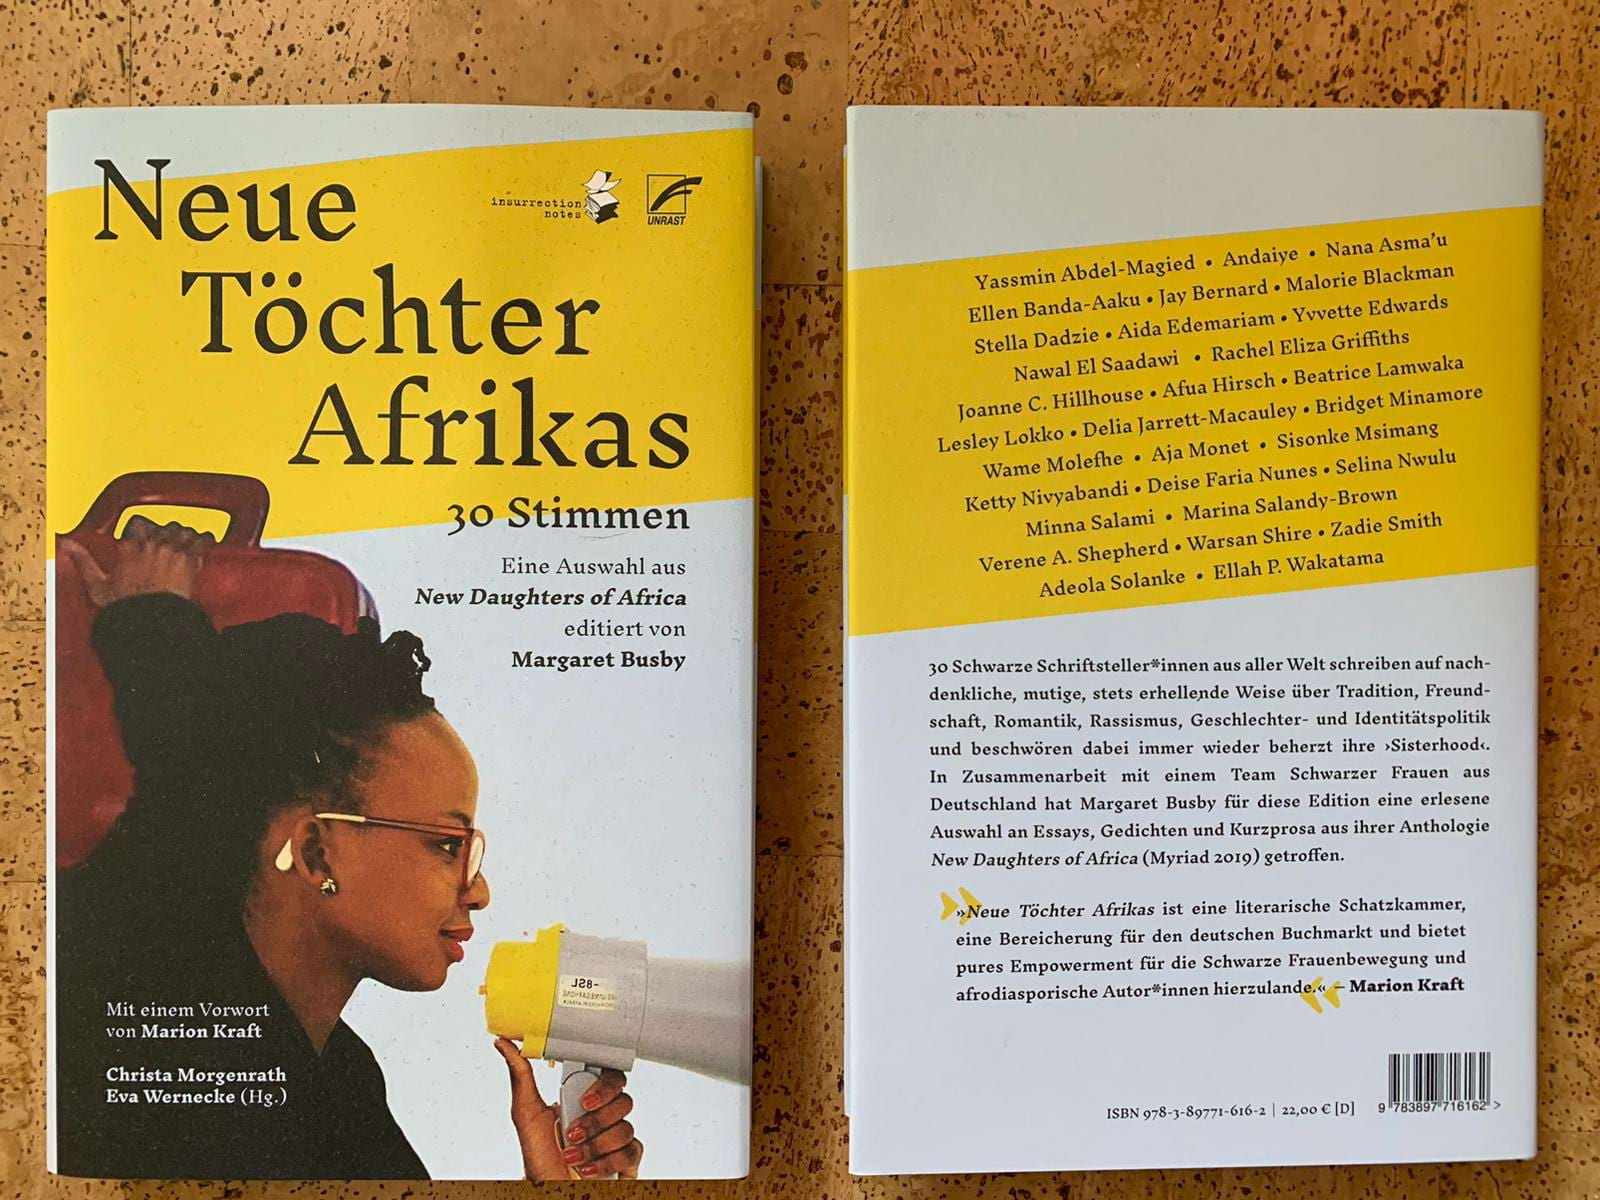 Übersetzung als Resonanzraum für Schwarze Stimmen | Frankfurter Buchmesse